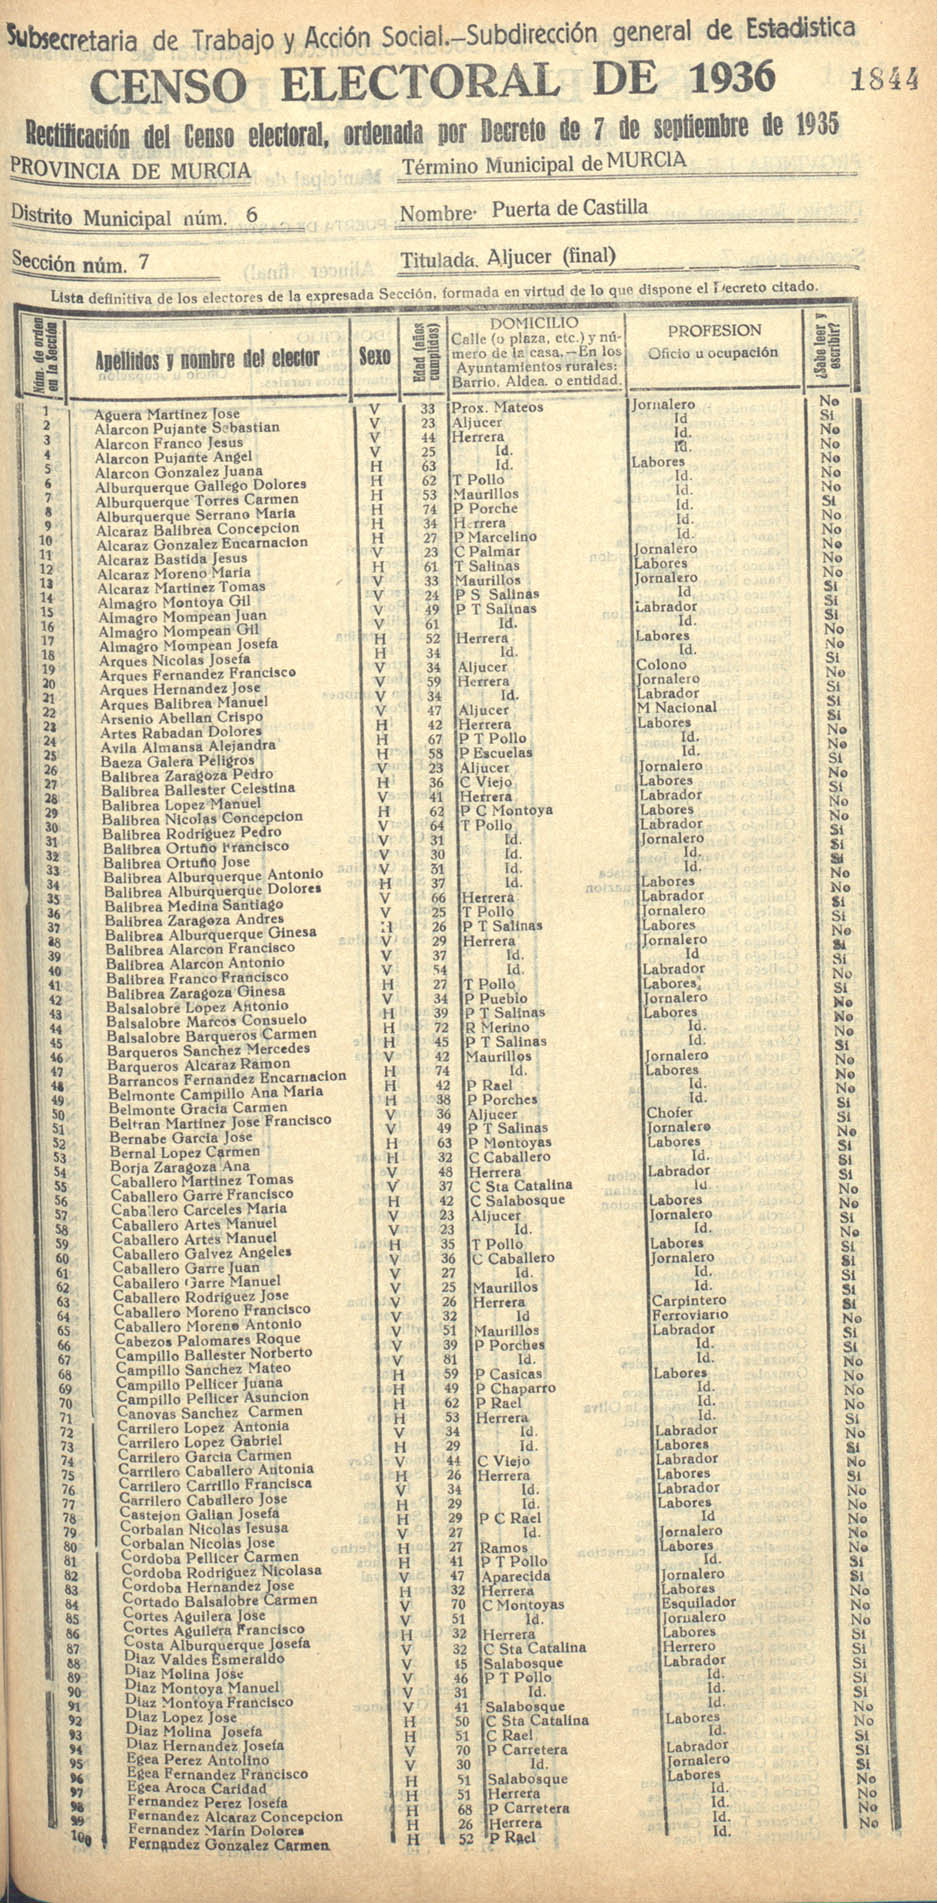 Censo electoral provincial de 1936. Murcia. Distrito 6º, Puerta de Castilla. Sección 7ª, Aljucer (final)